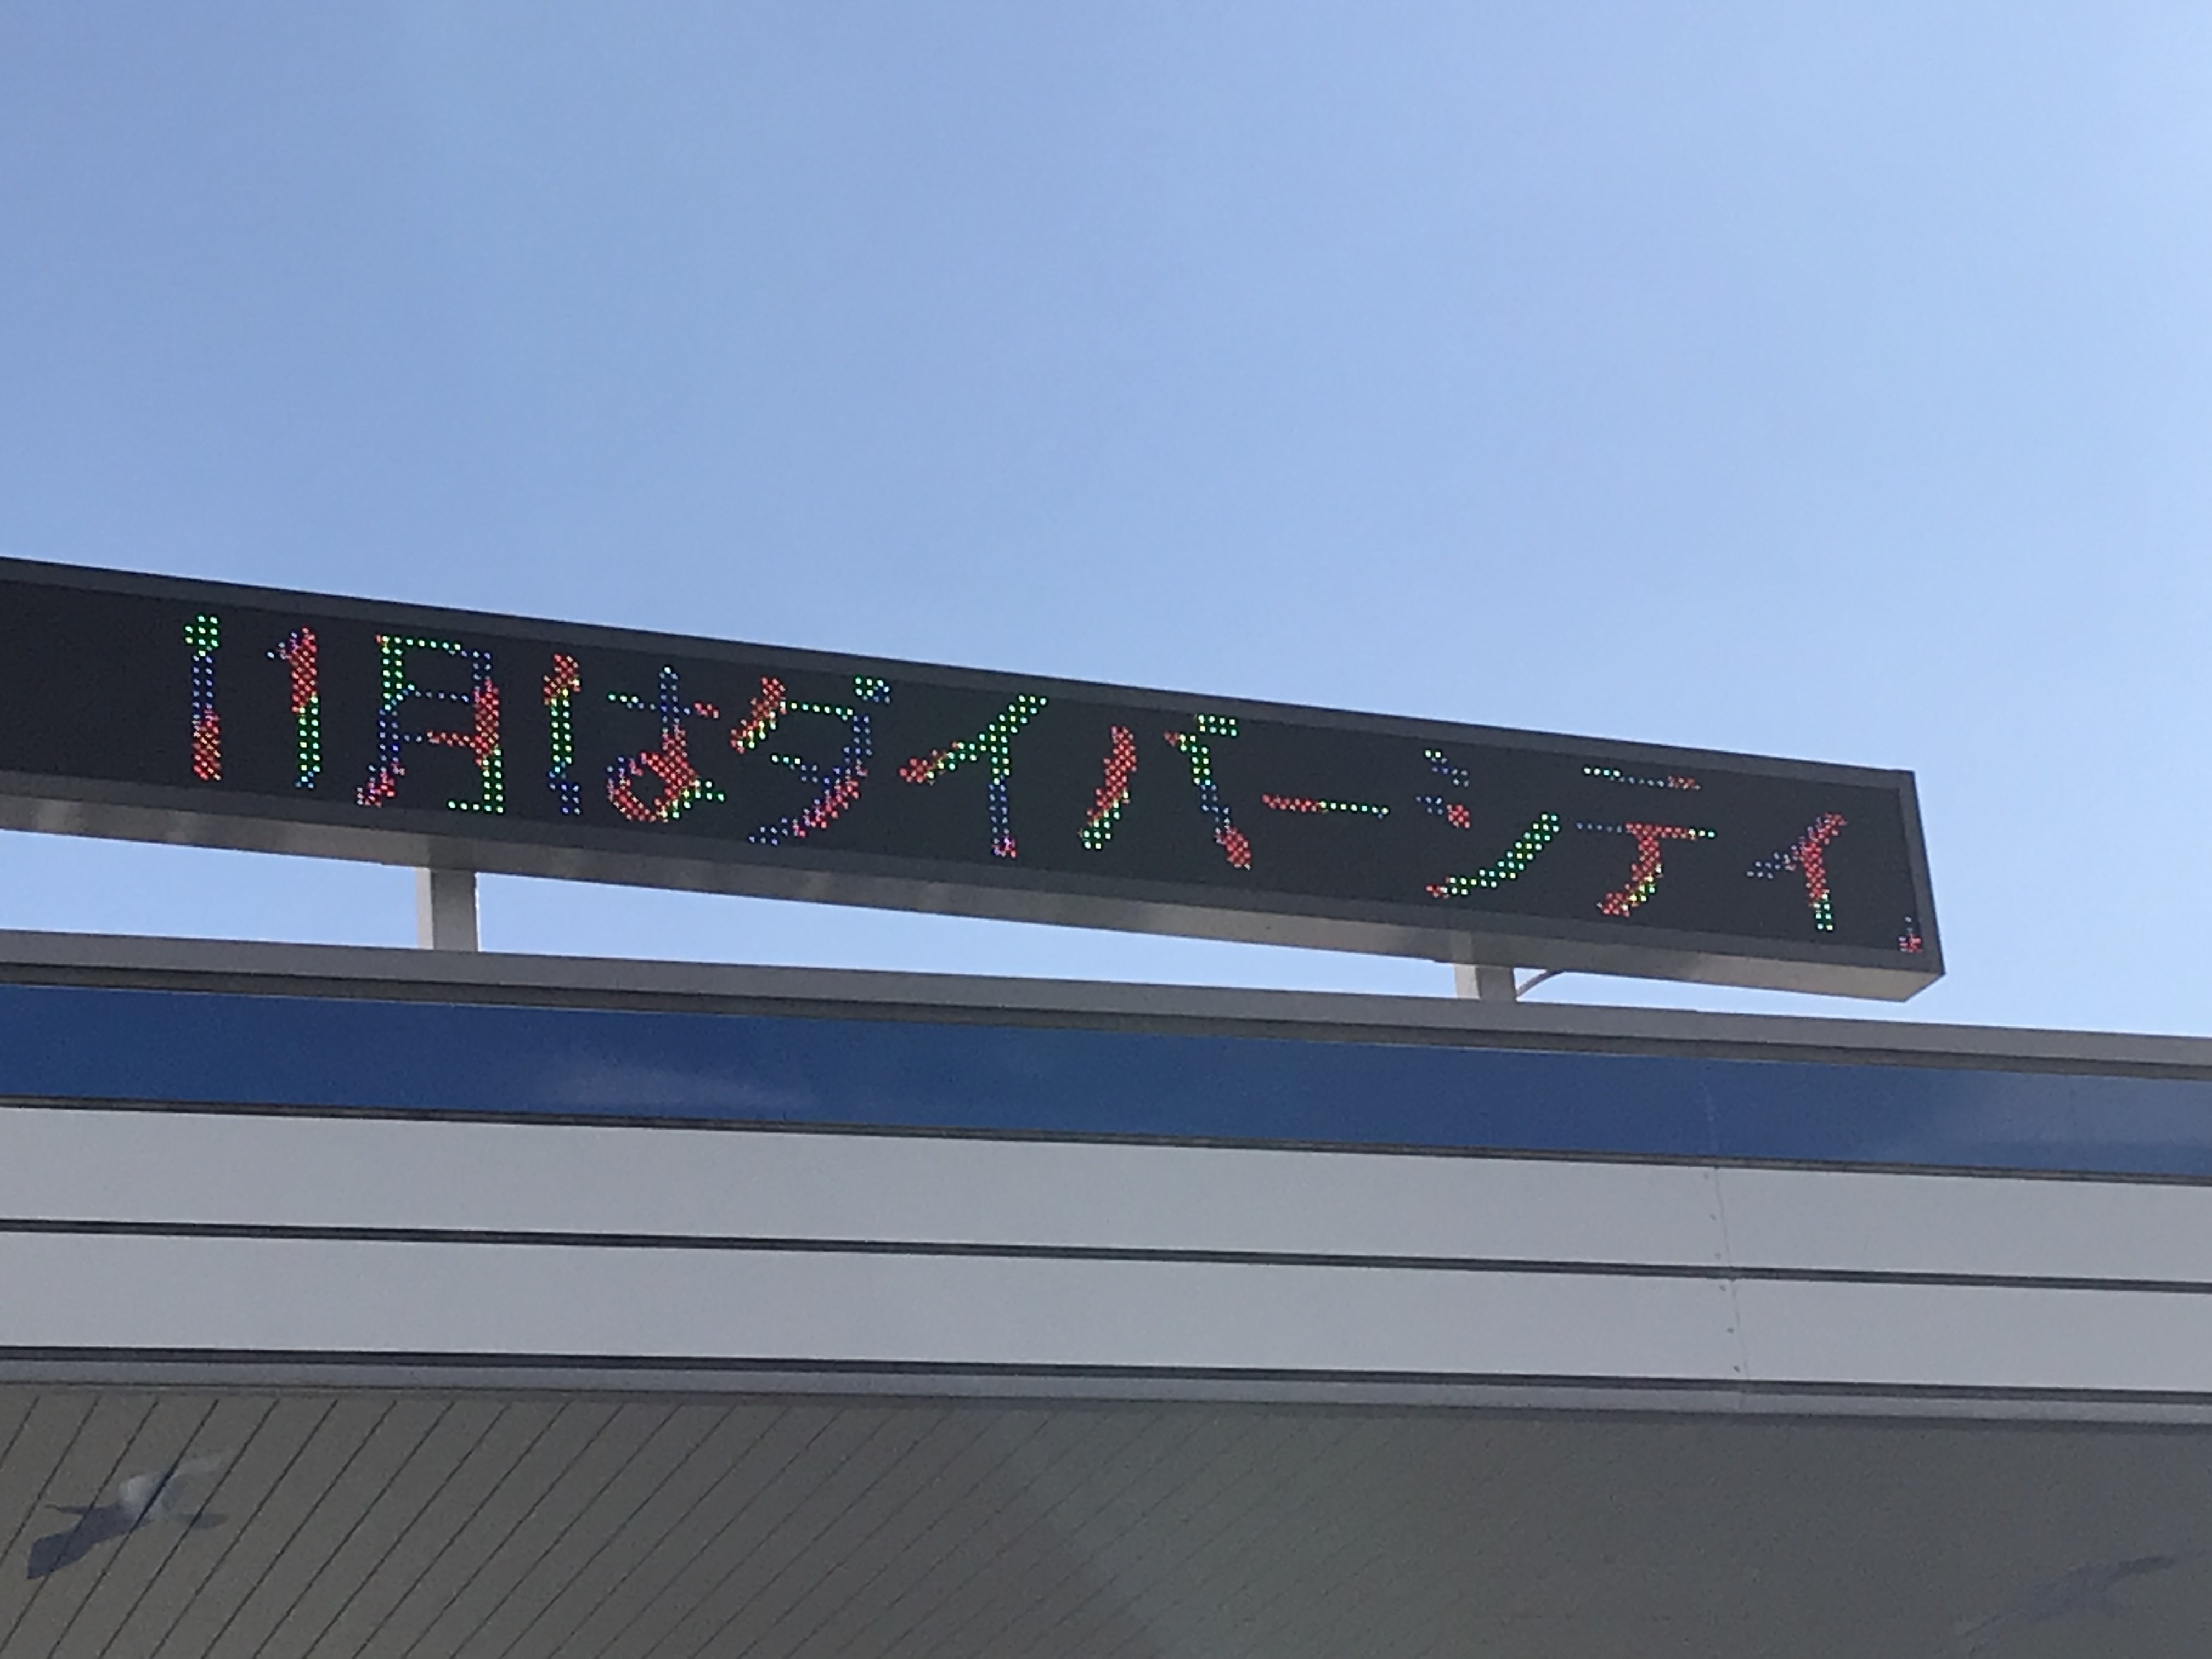 カラフルな文字で「11月はダイバーシティ」と表示されている電光掲示板